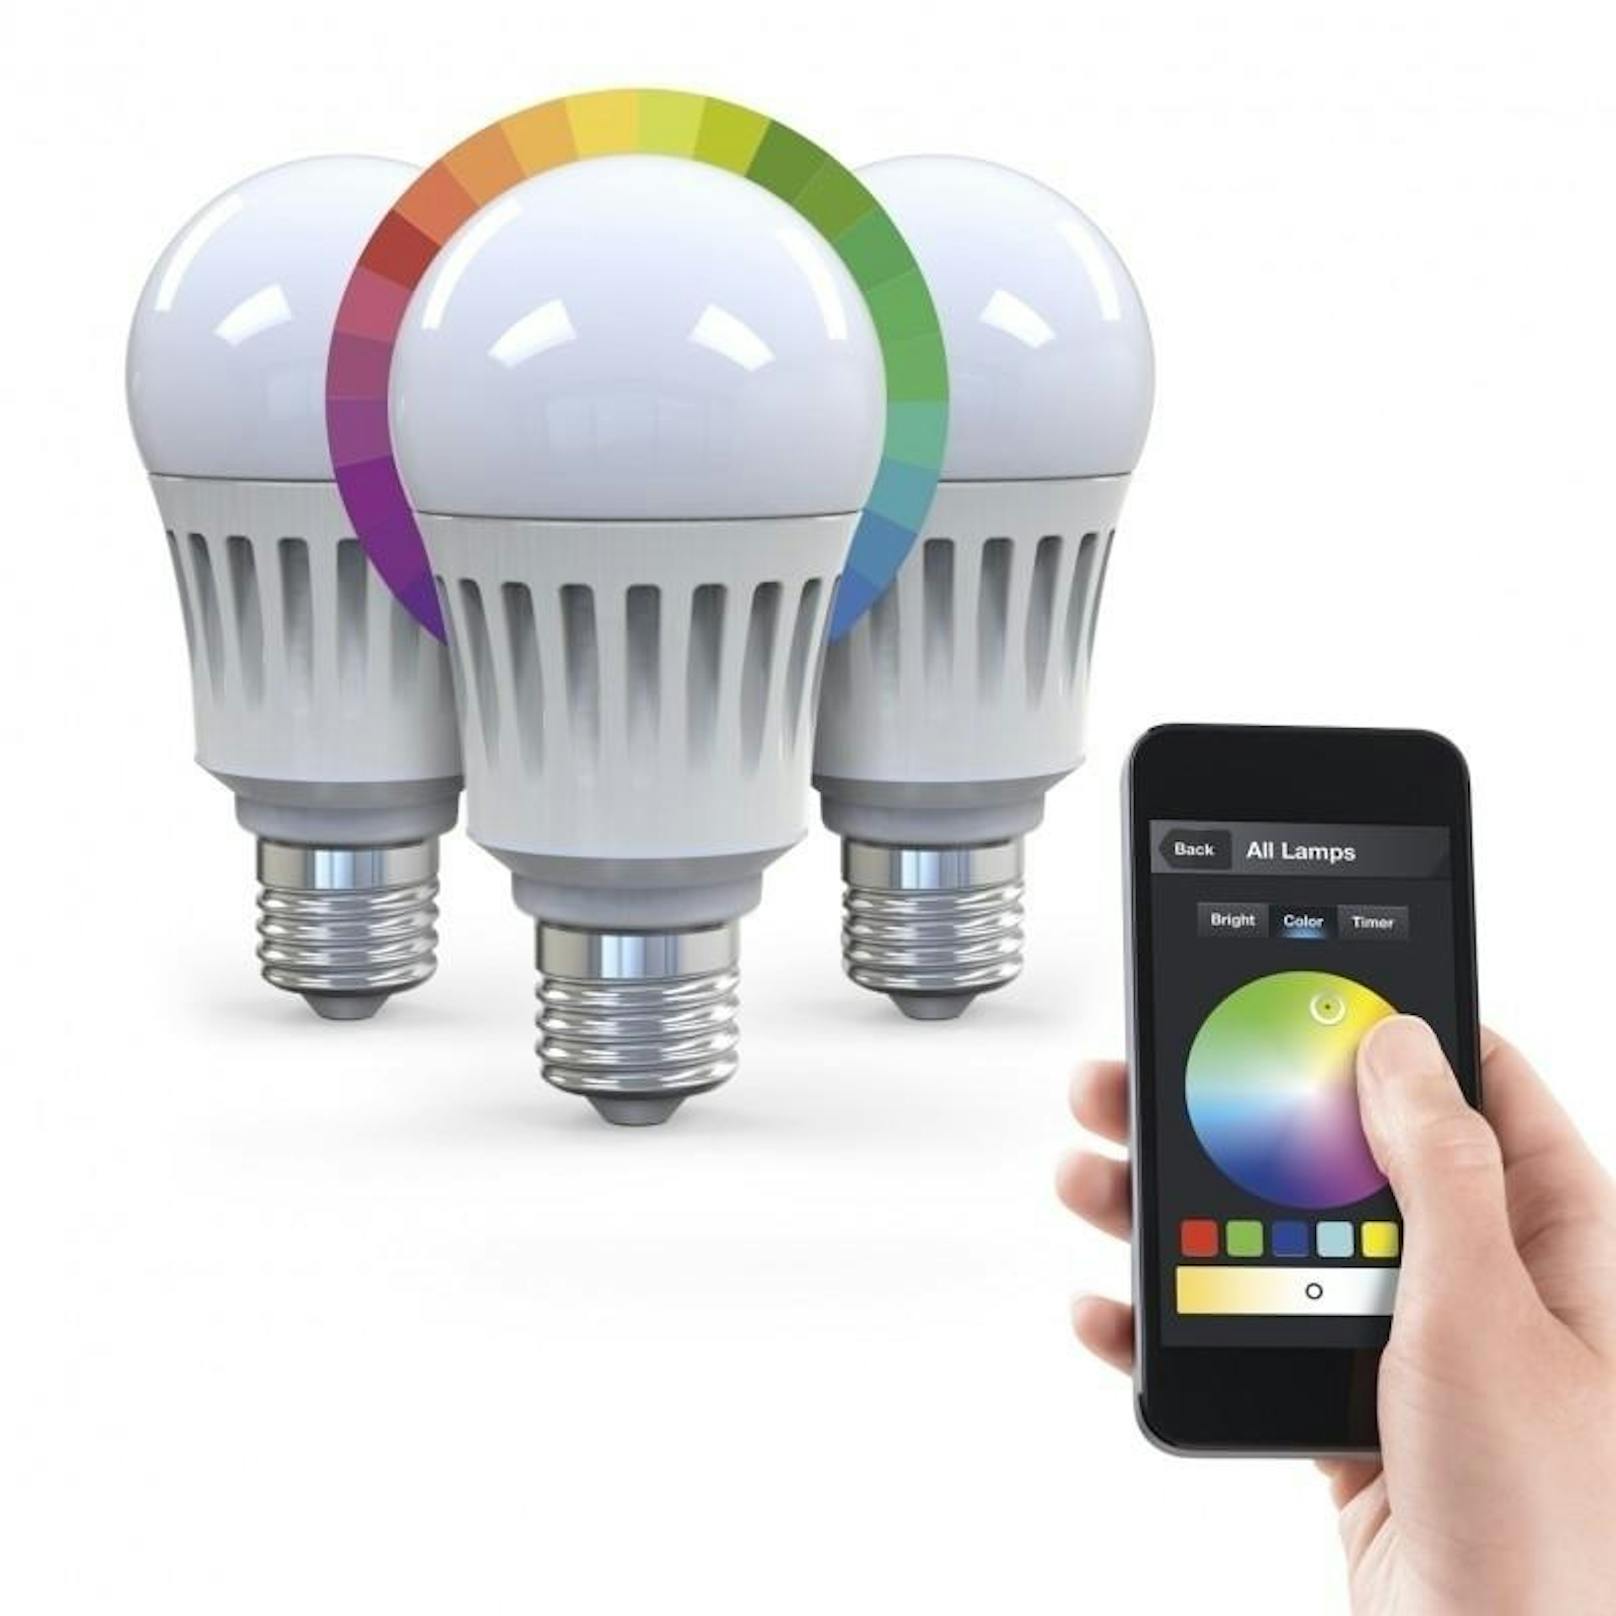 Wer seine Beleuchtung via Smartphone steuern will, der kauft smarte Glühbirnen. Mit einer App lässt sich beispielsweise die Glühbirne Nikkei dimmen, die Farbe verstellen und natürlich aus der Ferne an- und ausschalten. Ein Zähler teilt Ihnen mit, wie viel Strom Sie damit gespart haben.